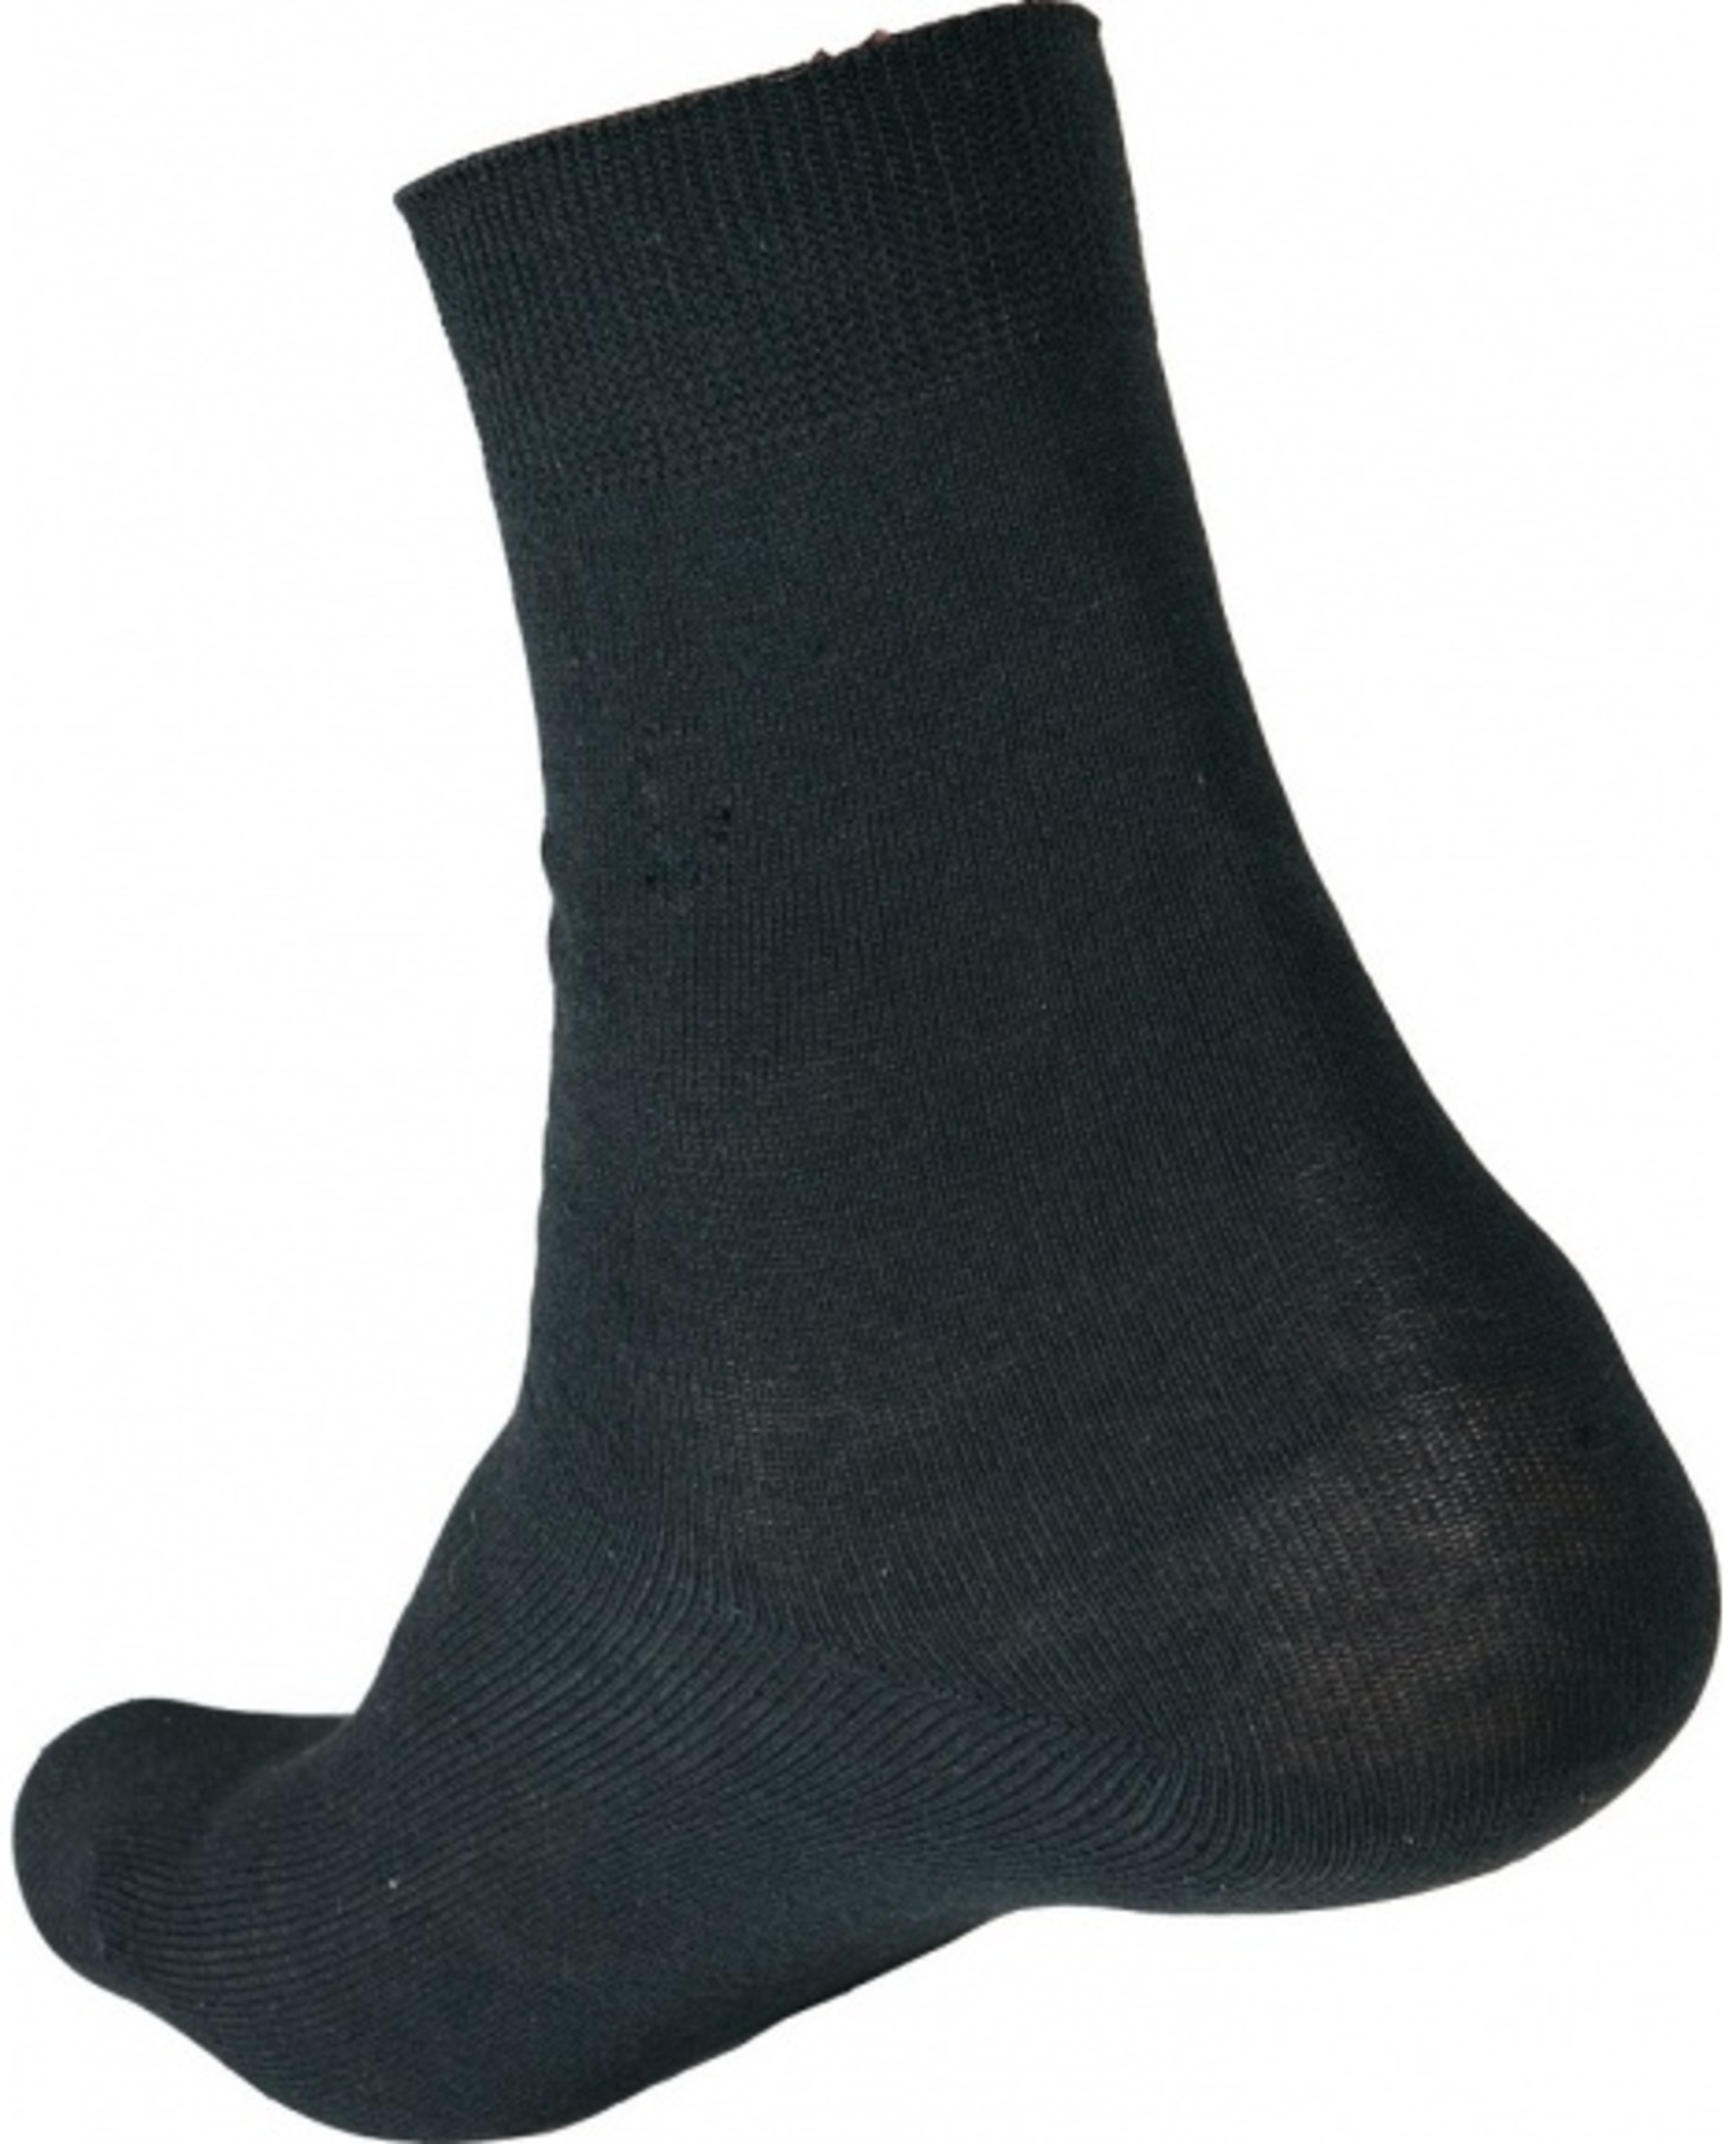 Ponožky CRV MERGE 44